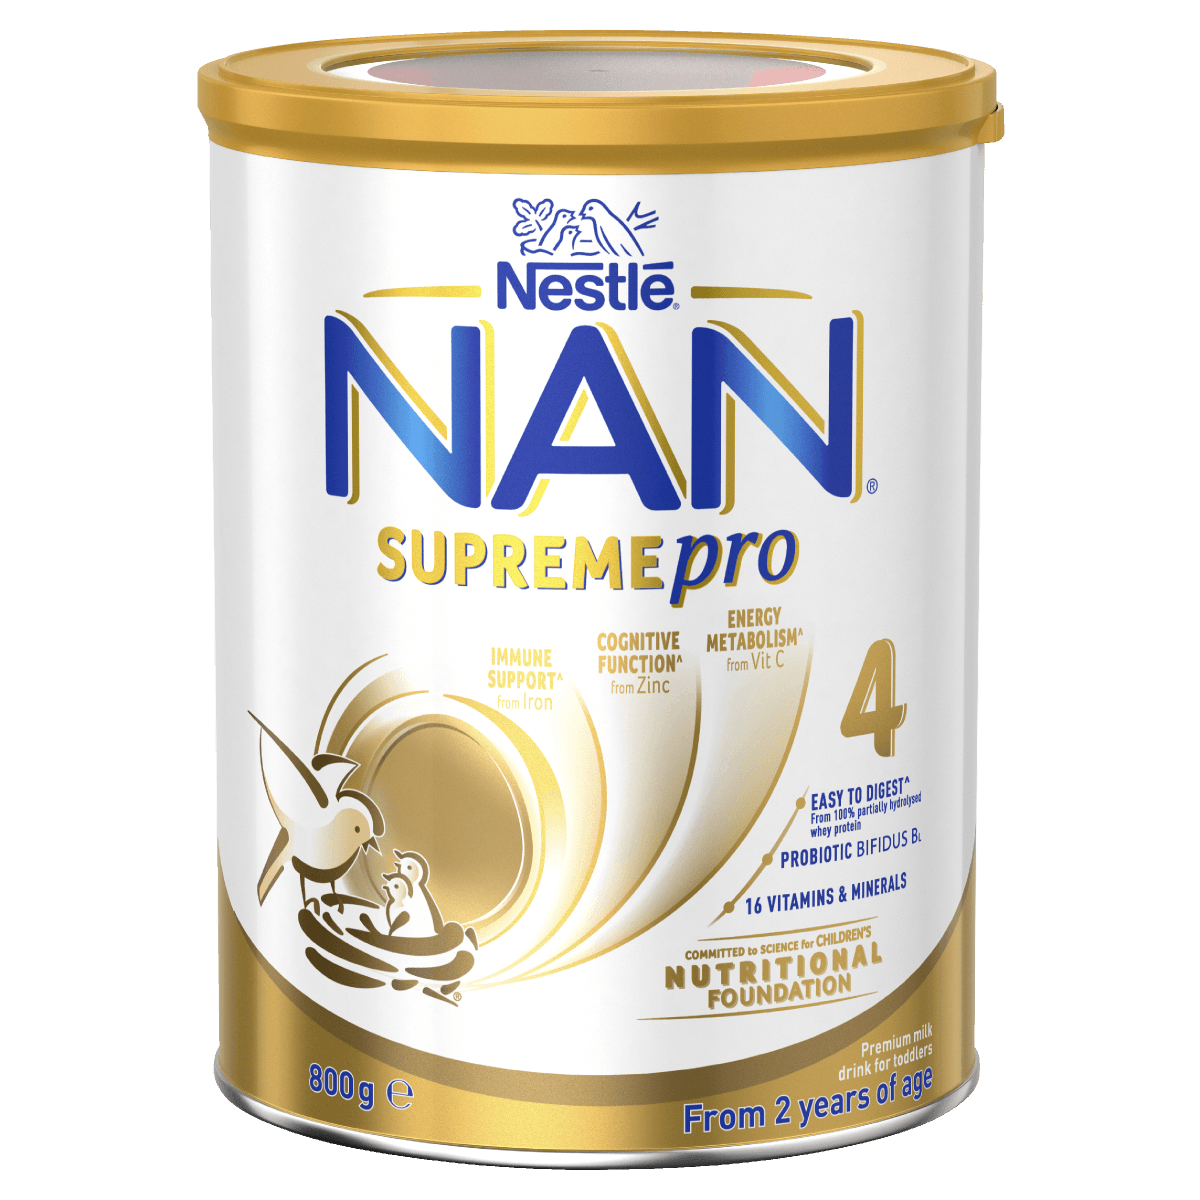 Nestlé NAN SUPREMEpro 4 Toddler 2+ Years Premium Milk Drink Powder 800g